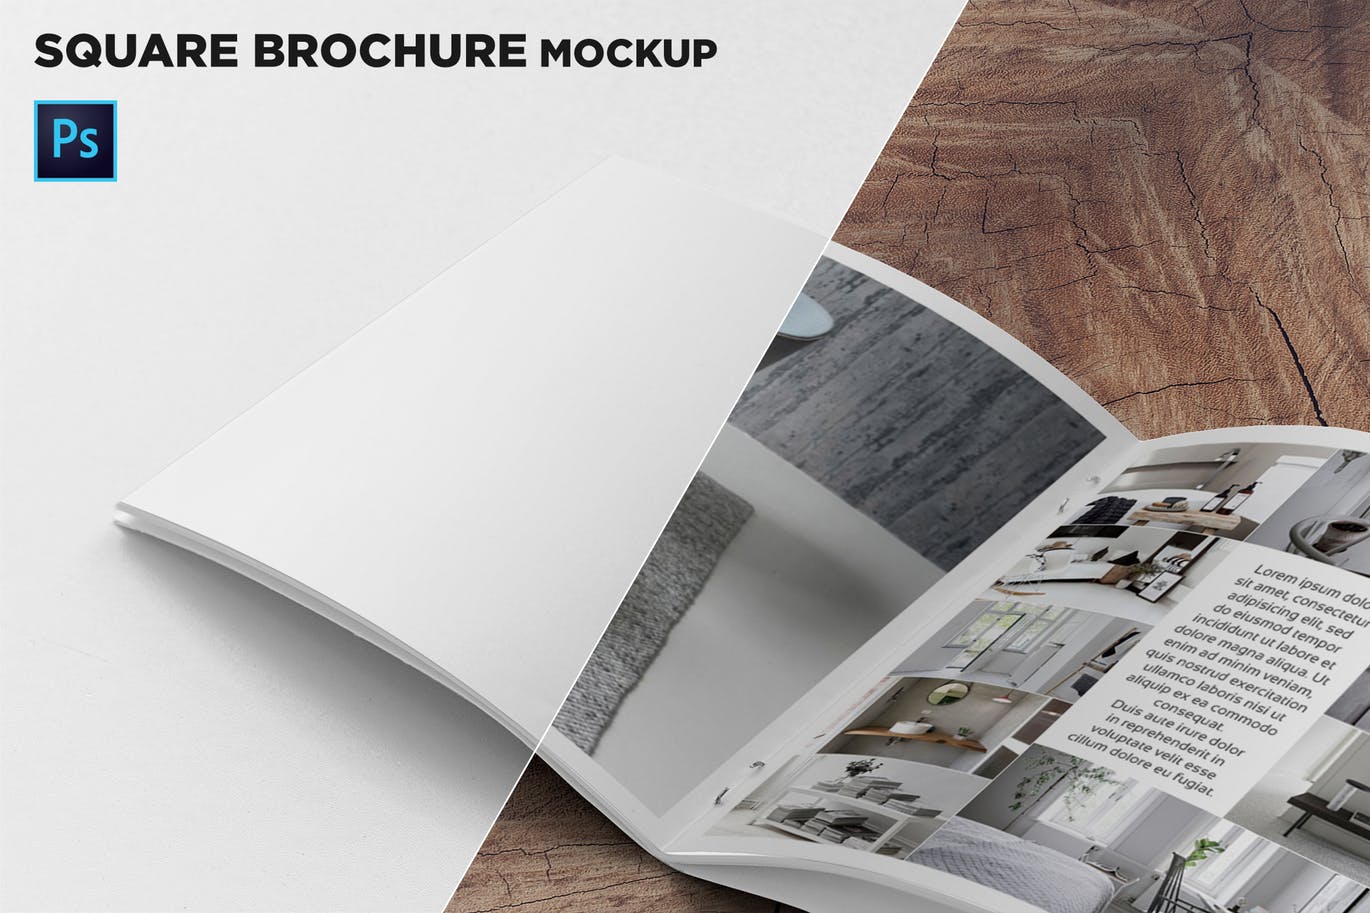 方形画册产品手册左页特写效果图样机第一素材精选 Square Brochure Mockup Closeup on Left Page插图